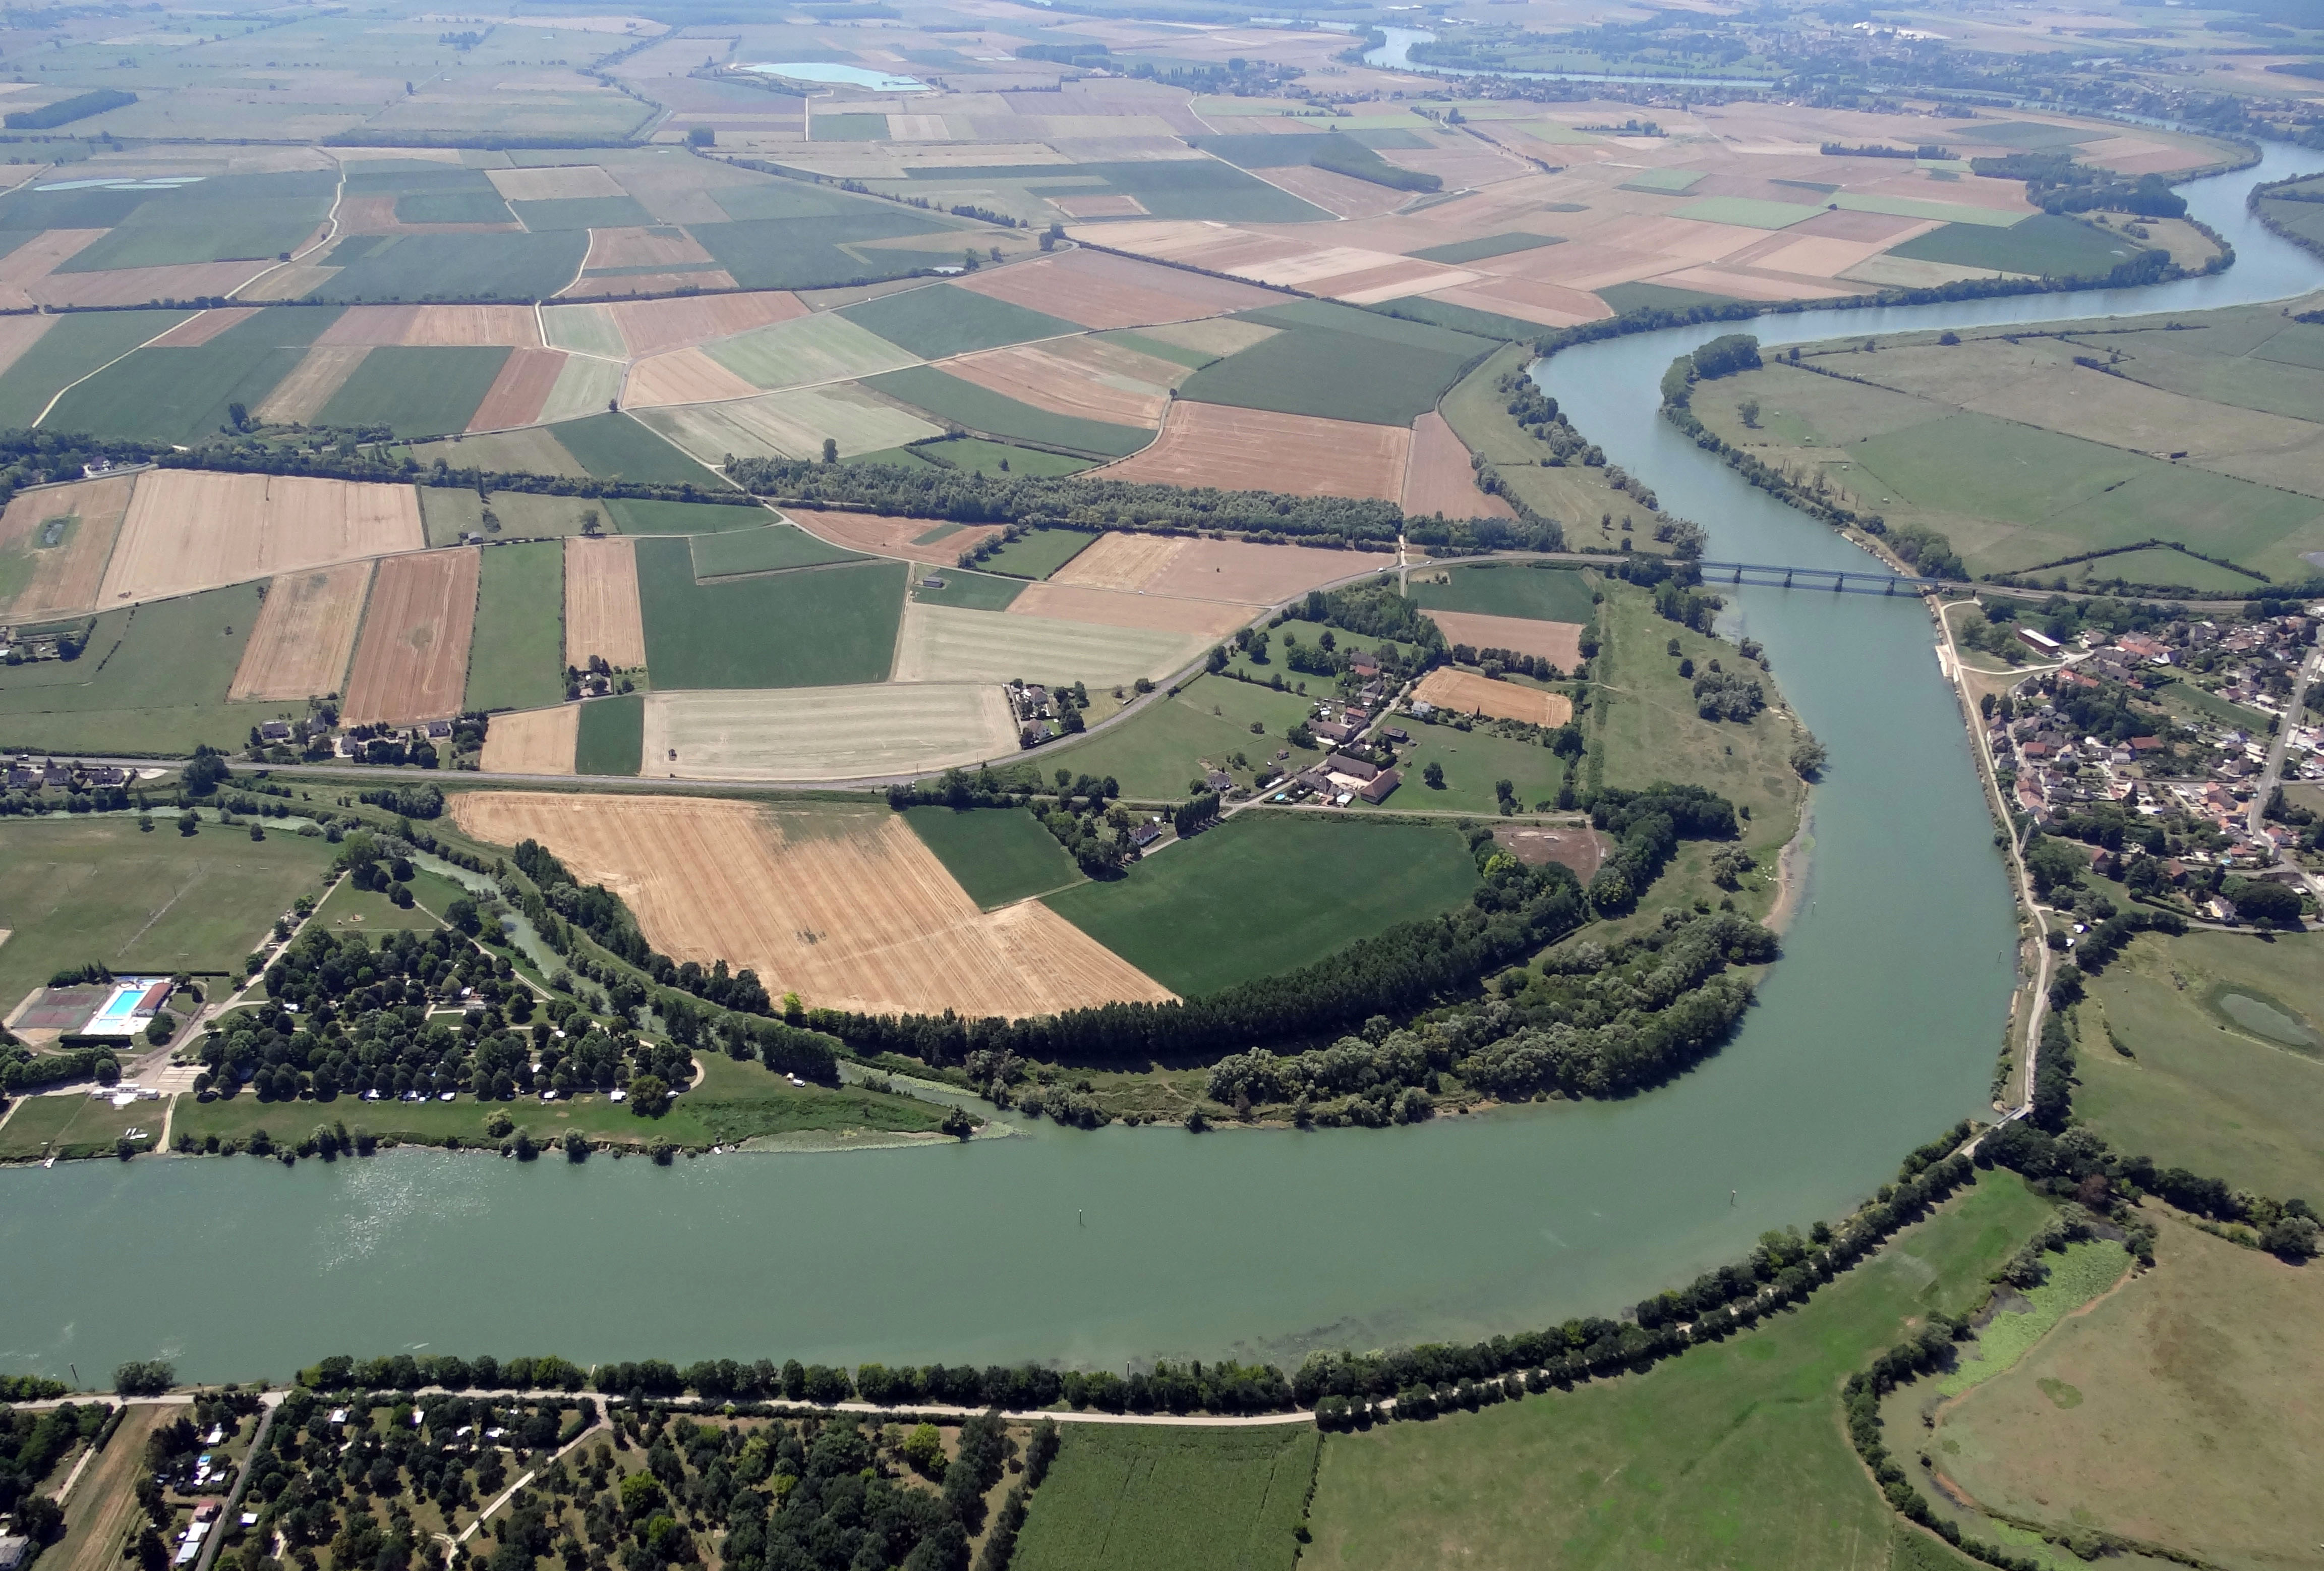 Traversant le département du nord au sud, la Saône forme une rivière large d'une centaine de mètres lors de son entrée dans le département, et s'élargissant progressivement pour atteindre les 300m dans ses sections les plus larges au sud du département. Confluence de la Saône et de la Dheune à Allerey-sur-Saône en grand format (nouvelle fenêtre)